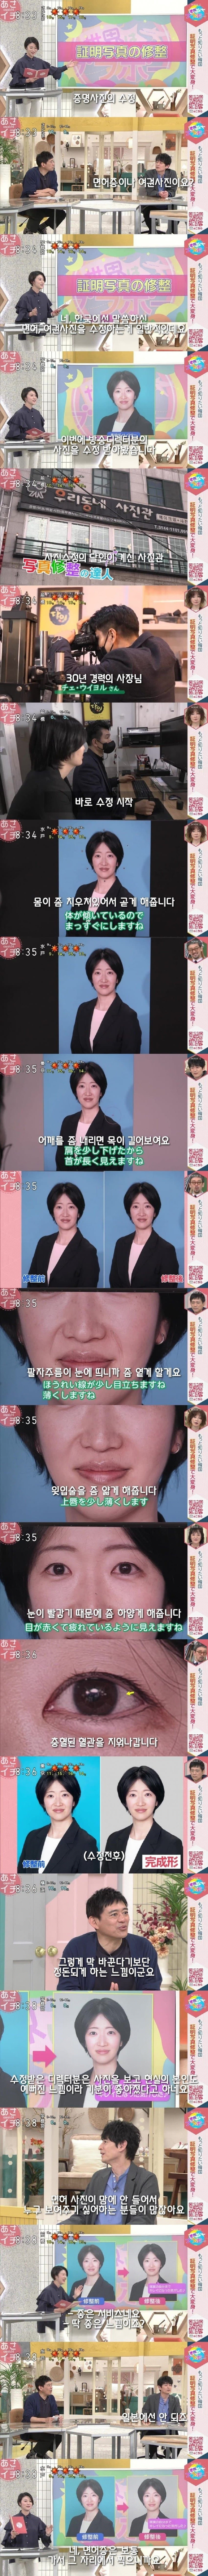 10 한국에서 증명사진 찍어본 일본사람 일본은 보통 면허시험장에서 즉석으로 찍어줘서 도둑놈처럼 나온다고 ㅋㅋ.jpg